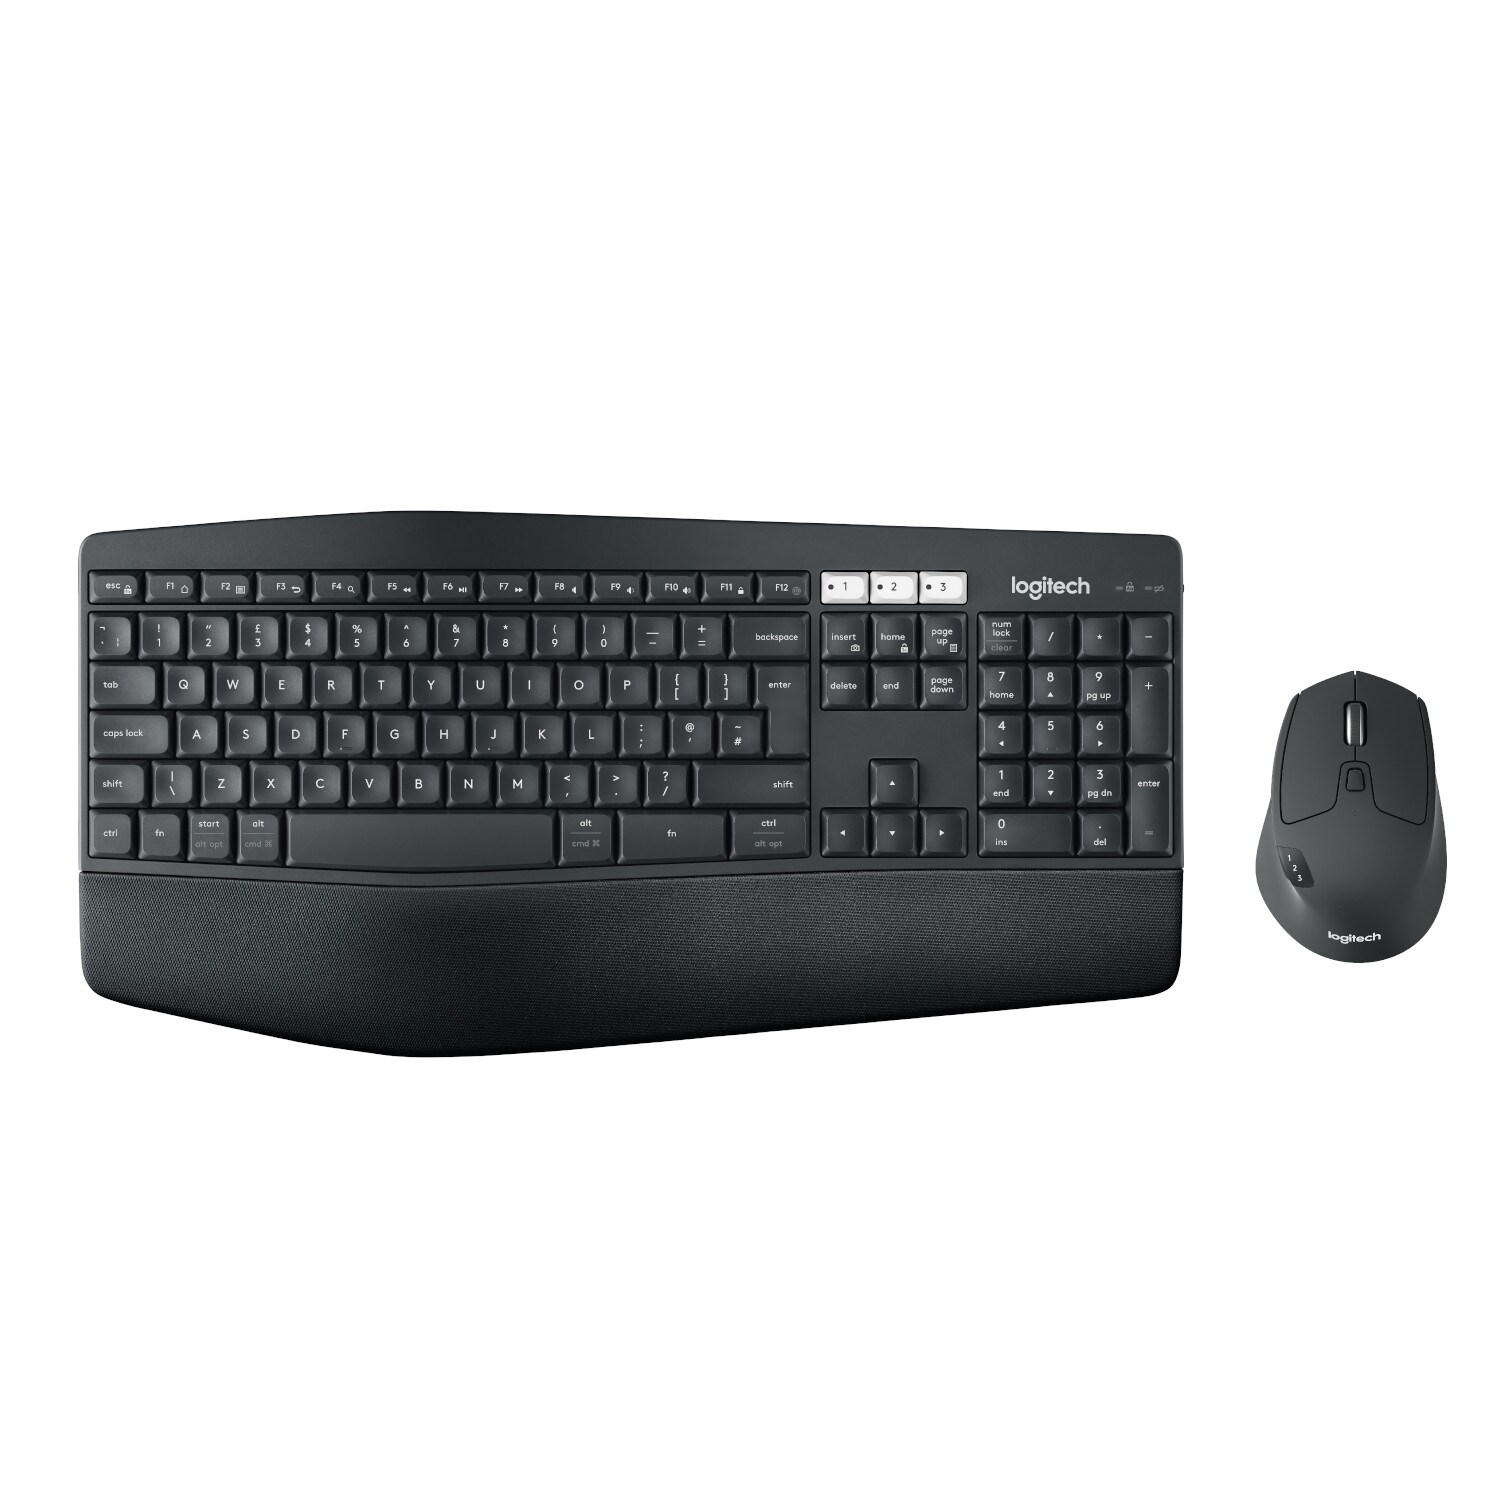 Logitech MK850 Performance trådlöst tangentbord och mus - Elgiganten